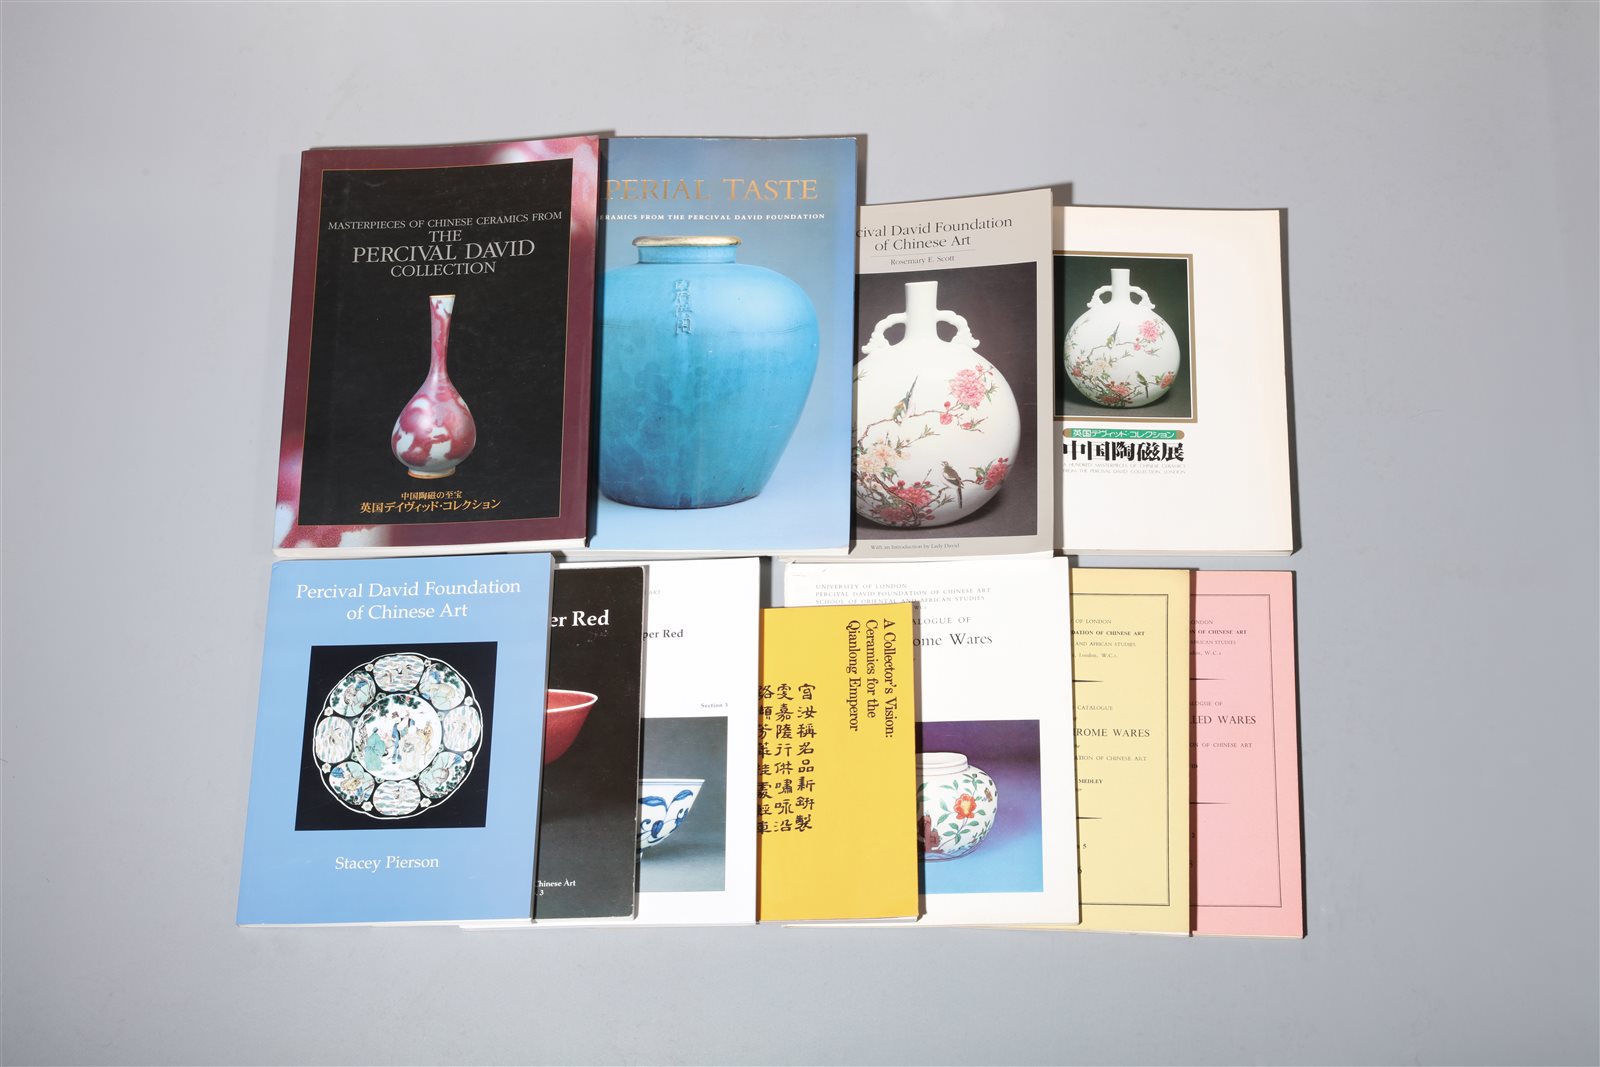 英国大维德基金会出版中国瓷器展览图录11册